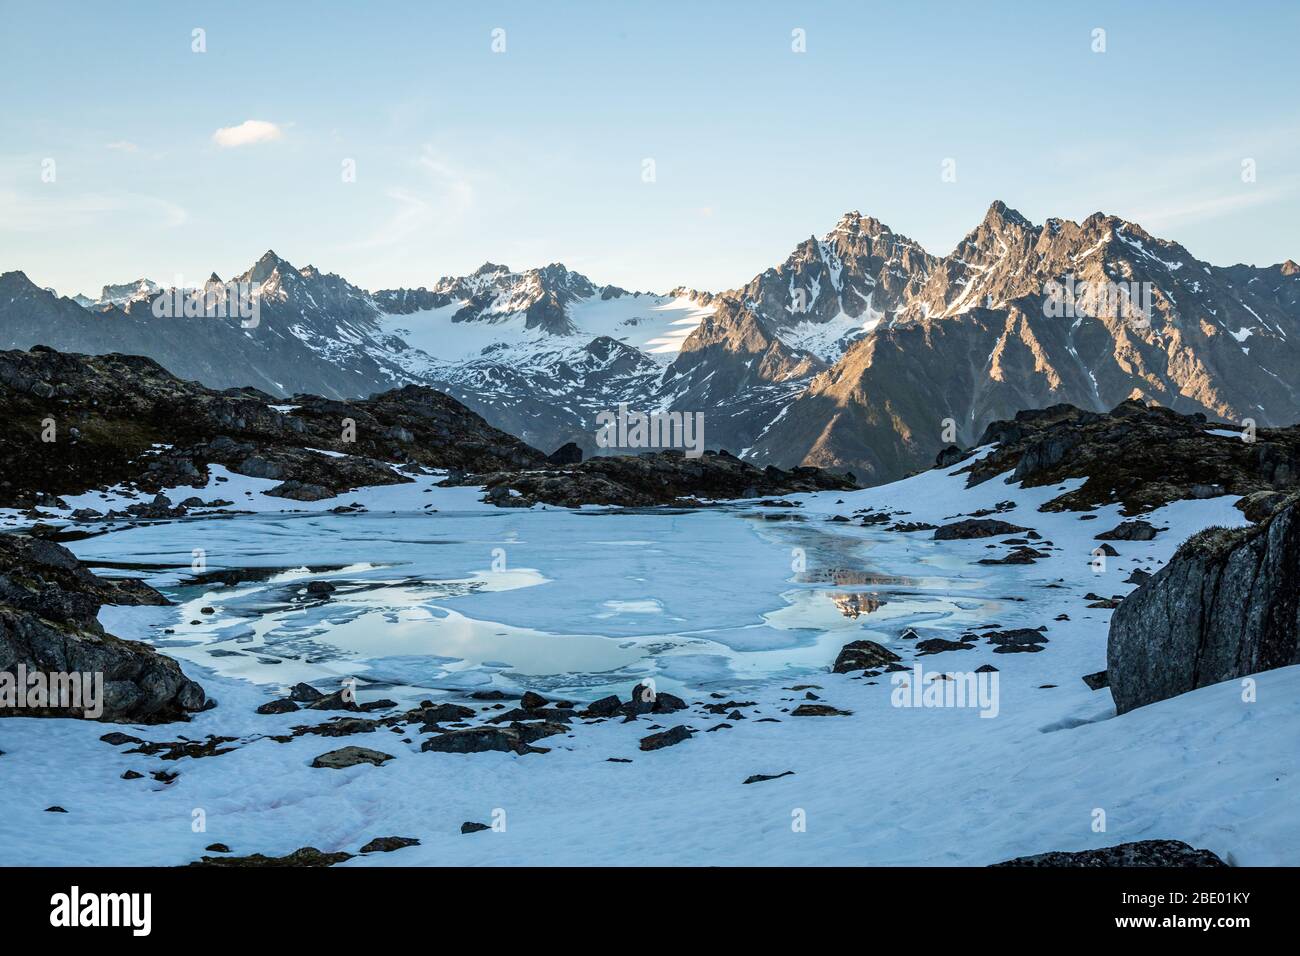 All'inizio di luglio nelle montagne Talkeetna dell'Alaska. Il lago alpino inizia a scongelare e i ghiacciai punteggiano le lontane vette rocciose. Foto Stock